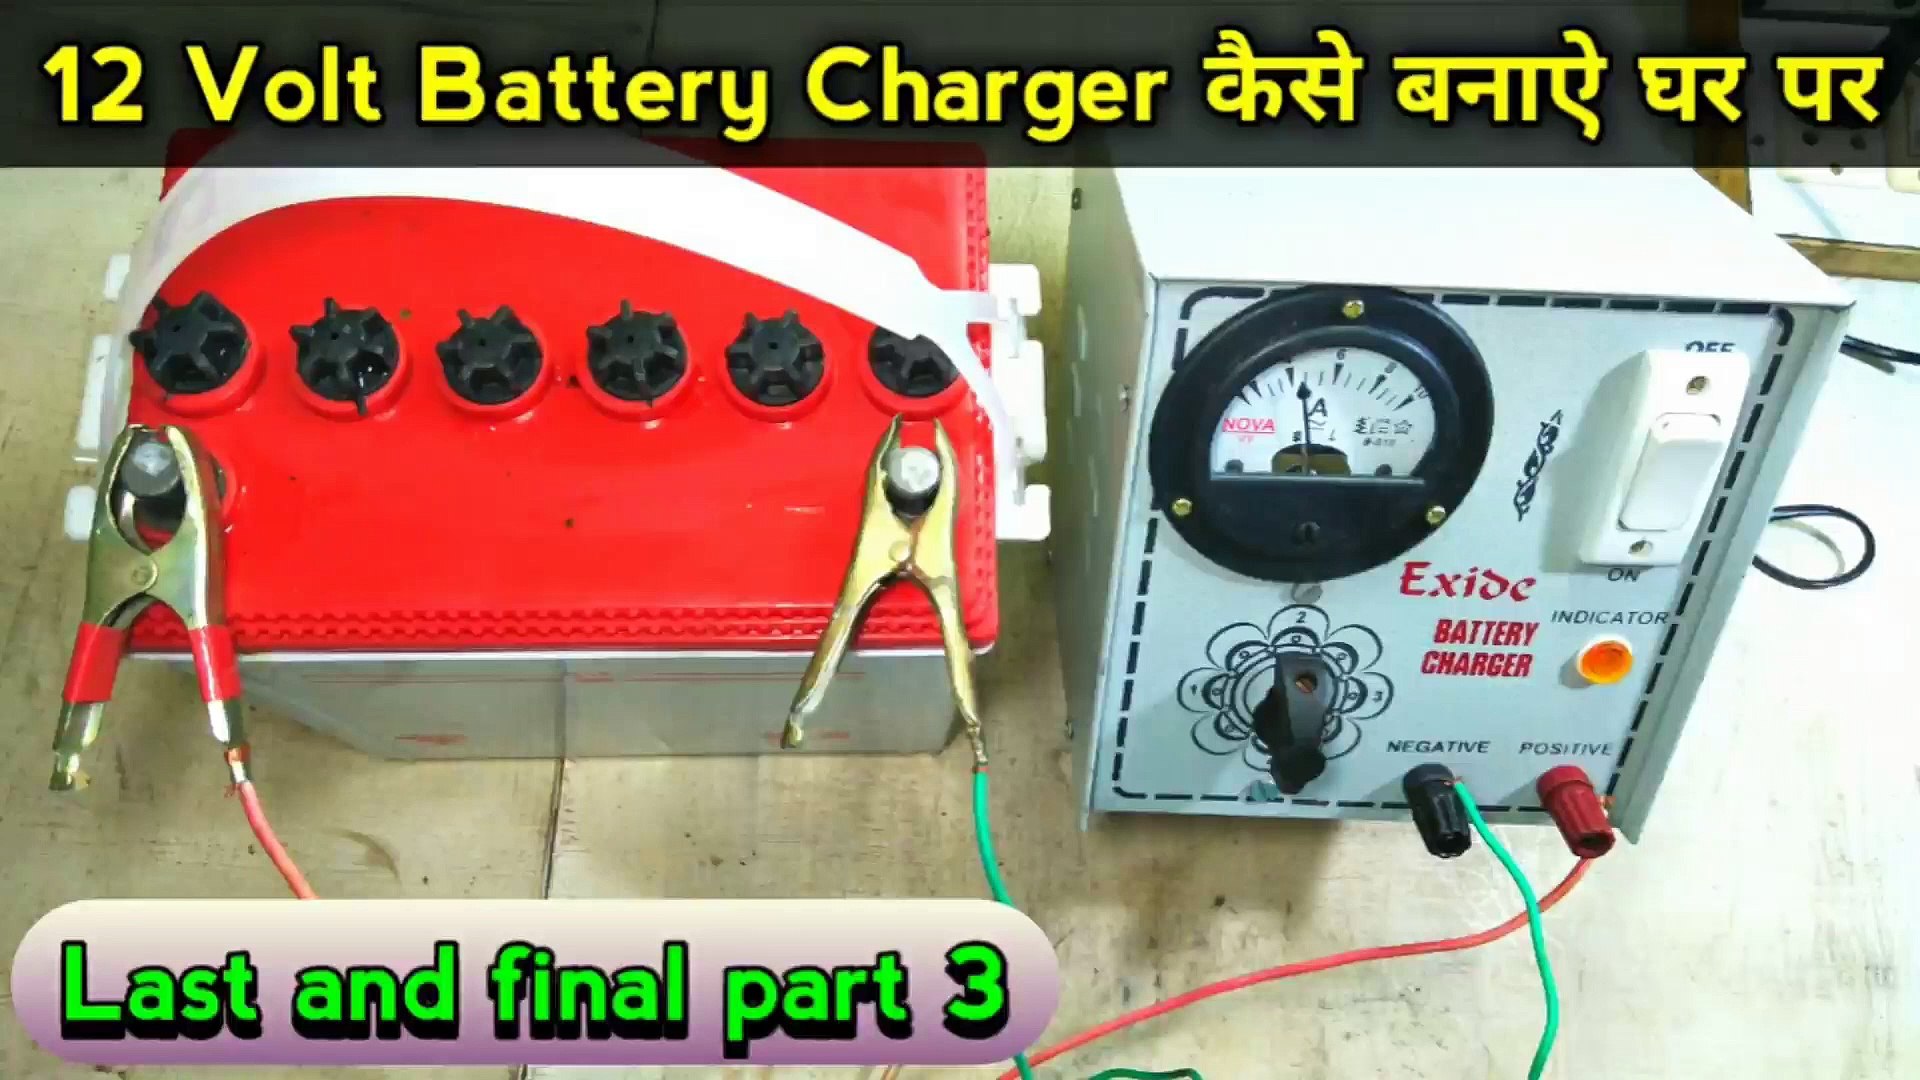 12 VOLT Battery Charger Kaise Banaen Ghar Per | battery charger repair | battery  charger 12v - video Dailymotion